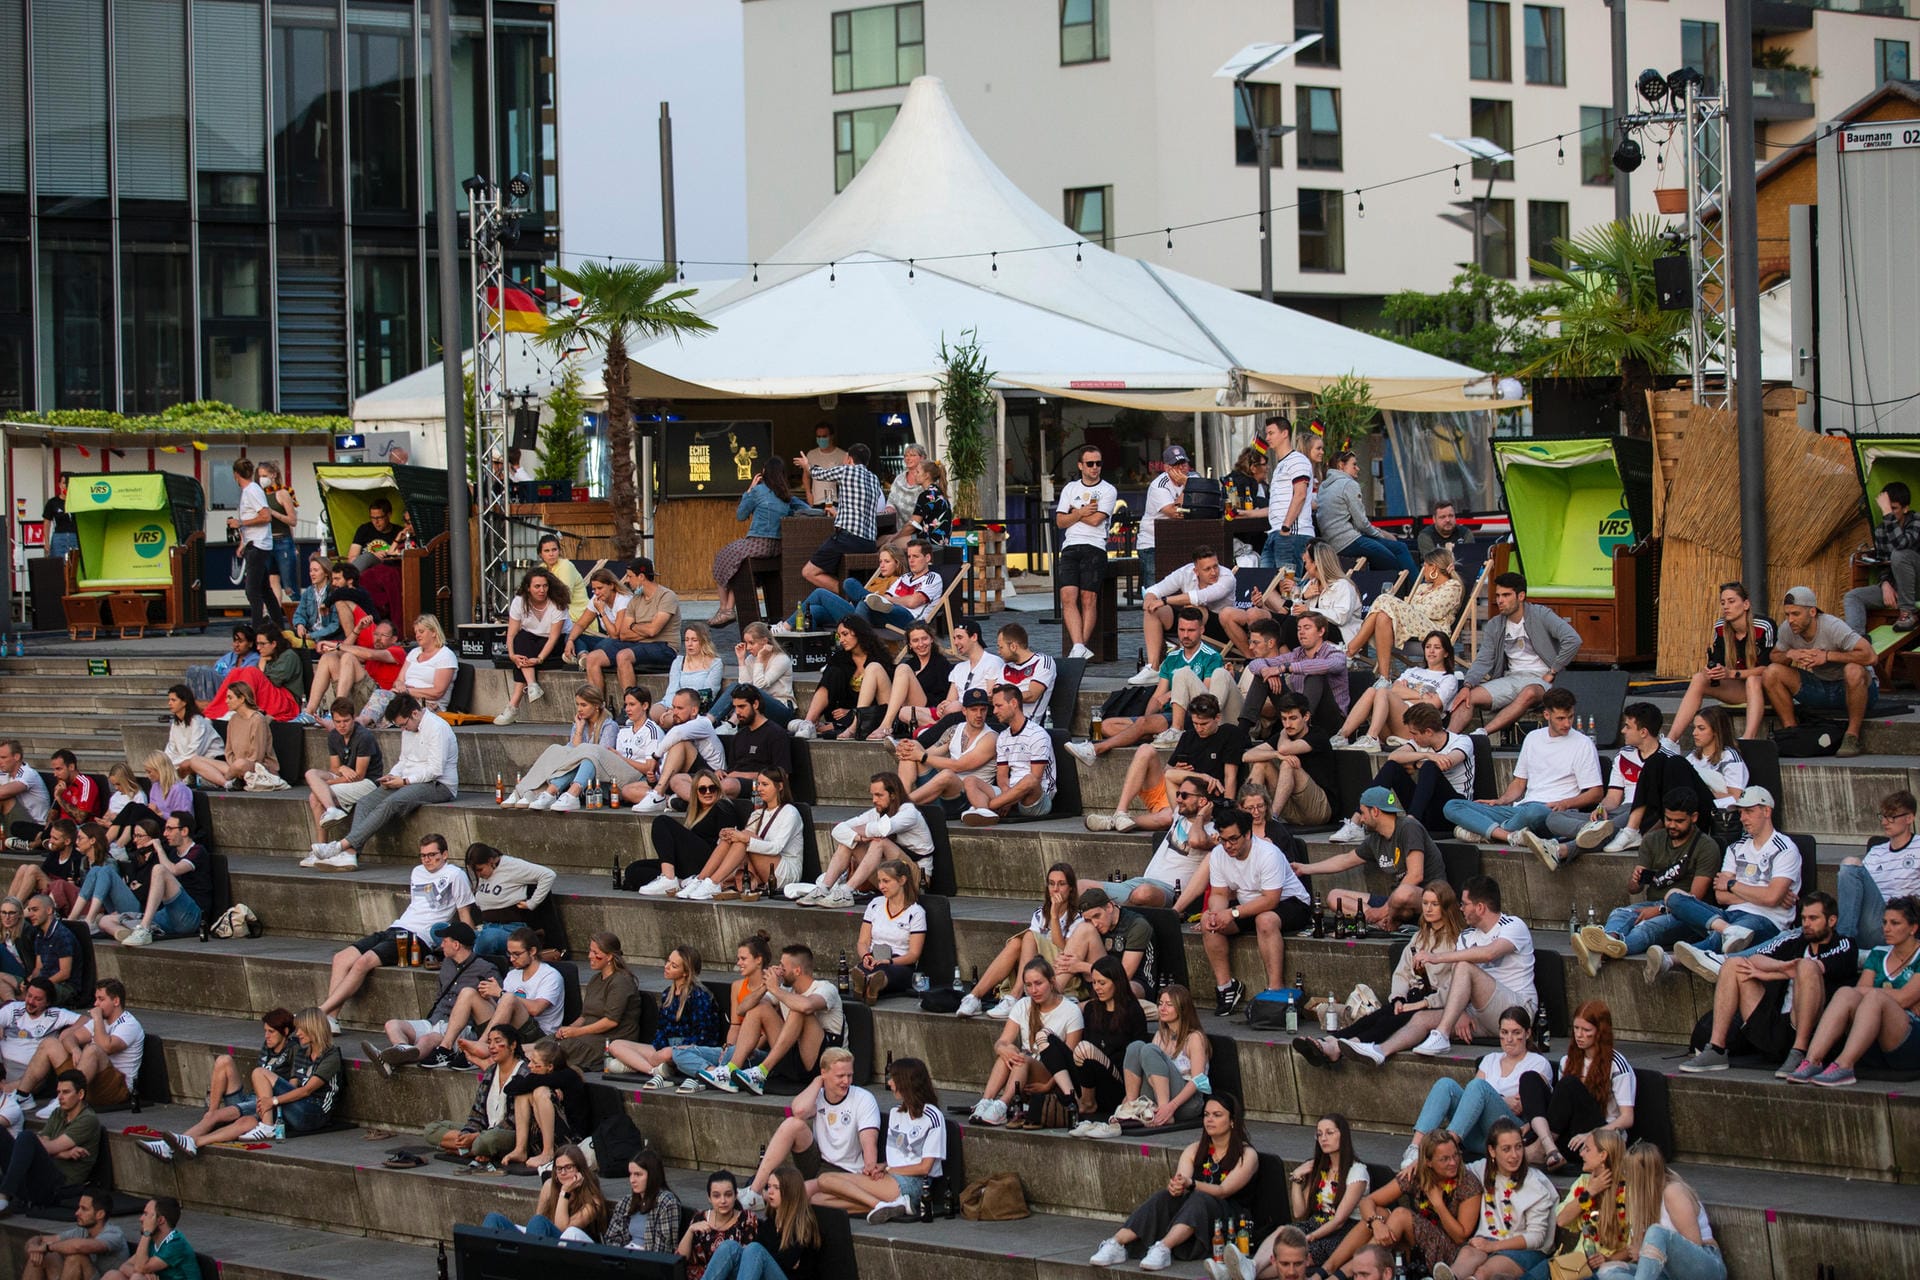 Fußball-Fans in Köln: Besucher eines Open-Air-Kinos verfolgen das EM-Spiel.